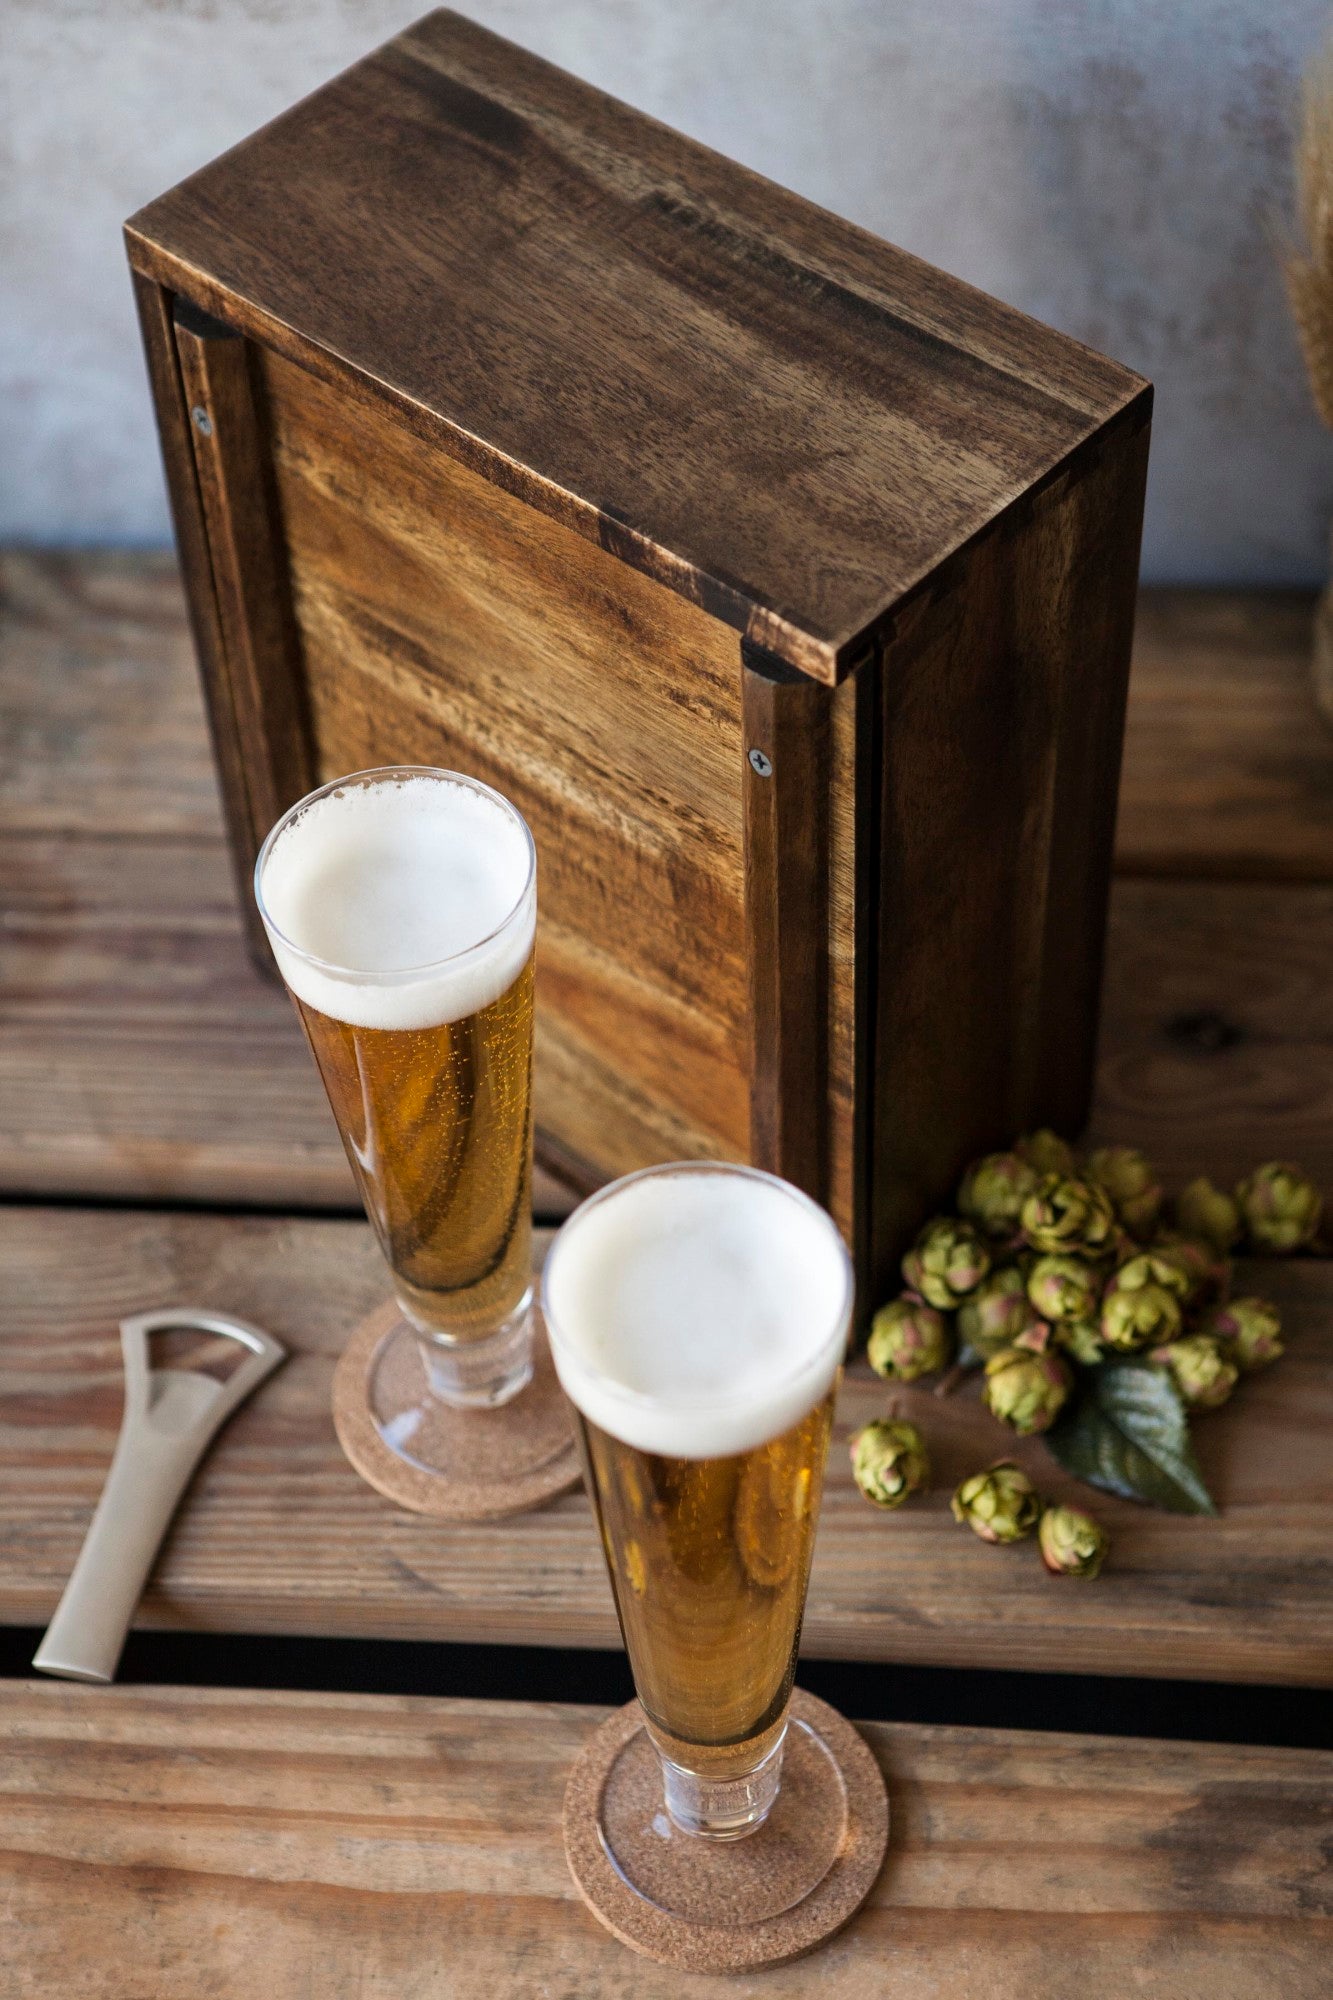 Los Angeles Angels - Pilsner Beer Glass Gift Set